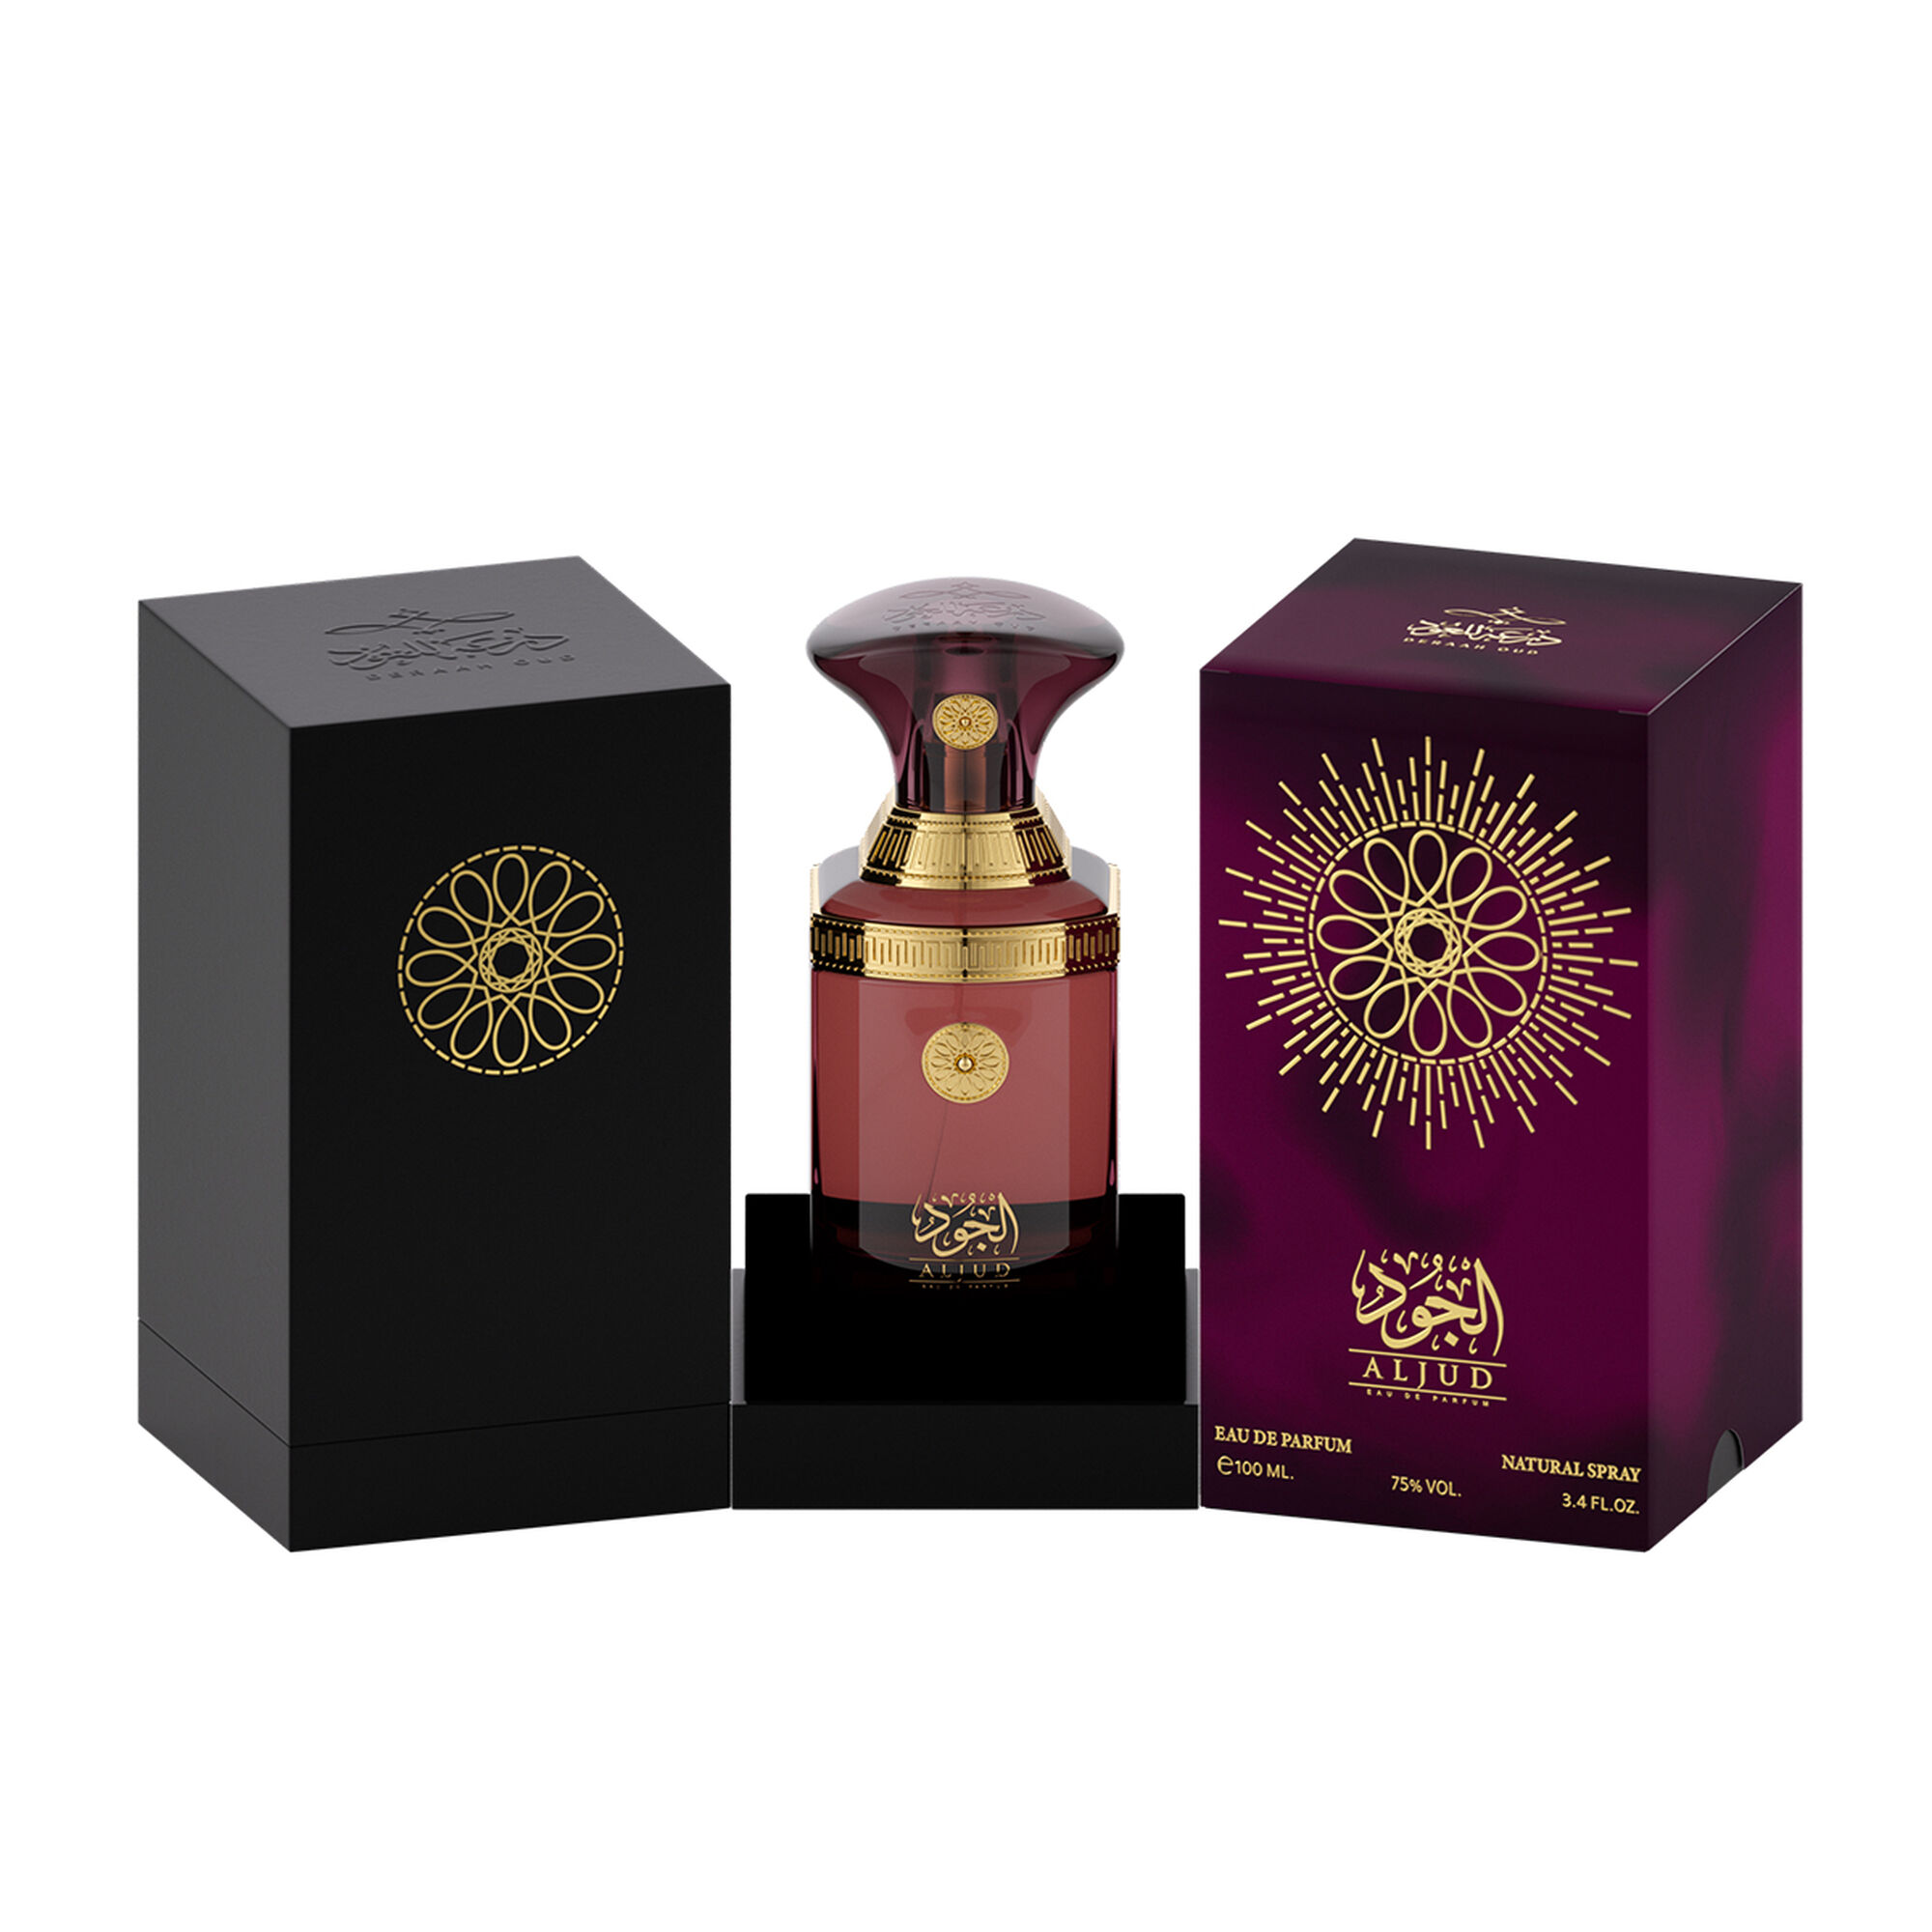 Al Joud perfume 100 ml